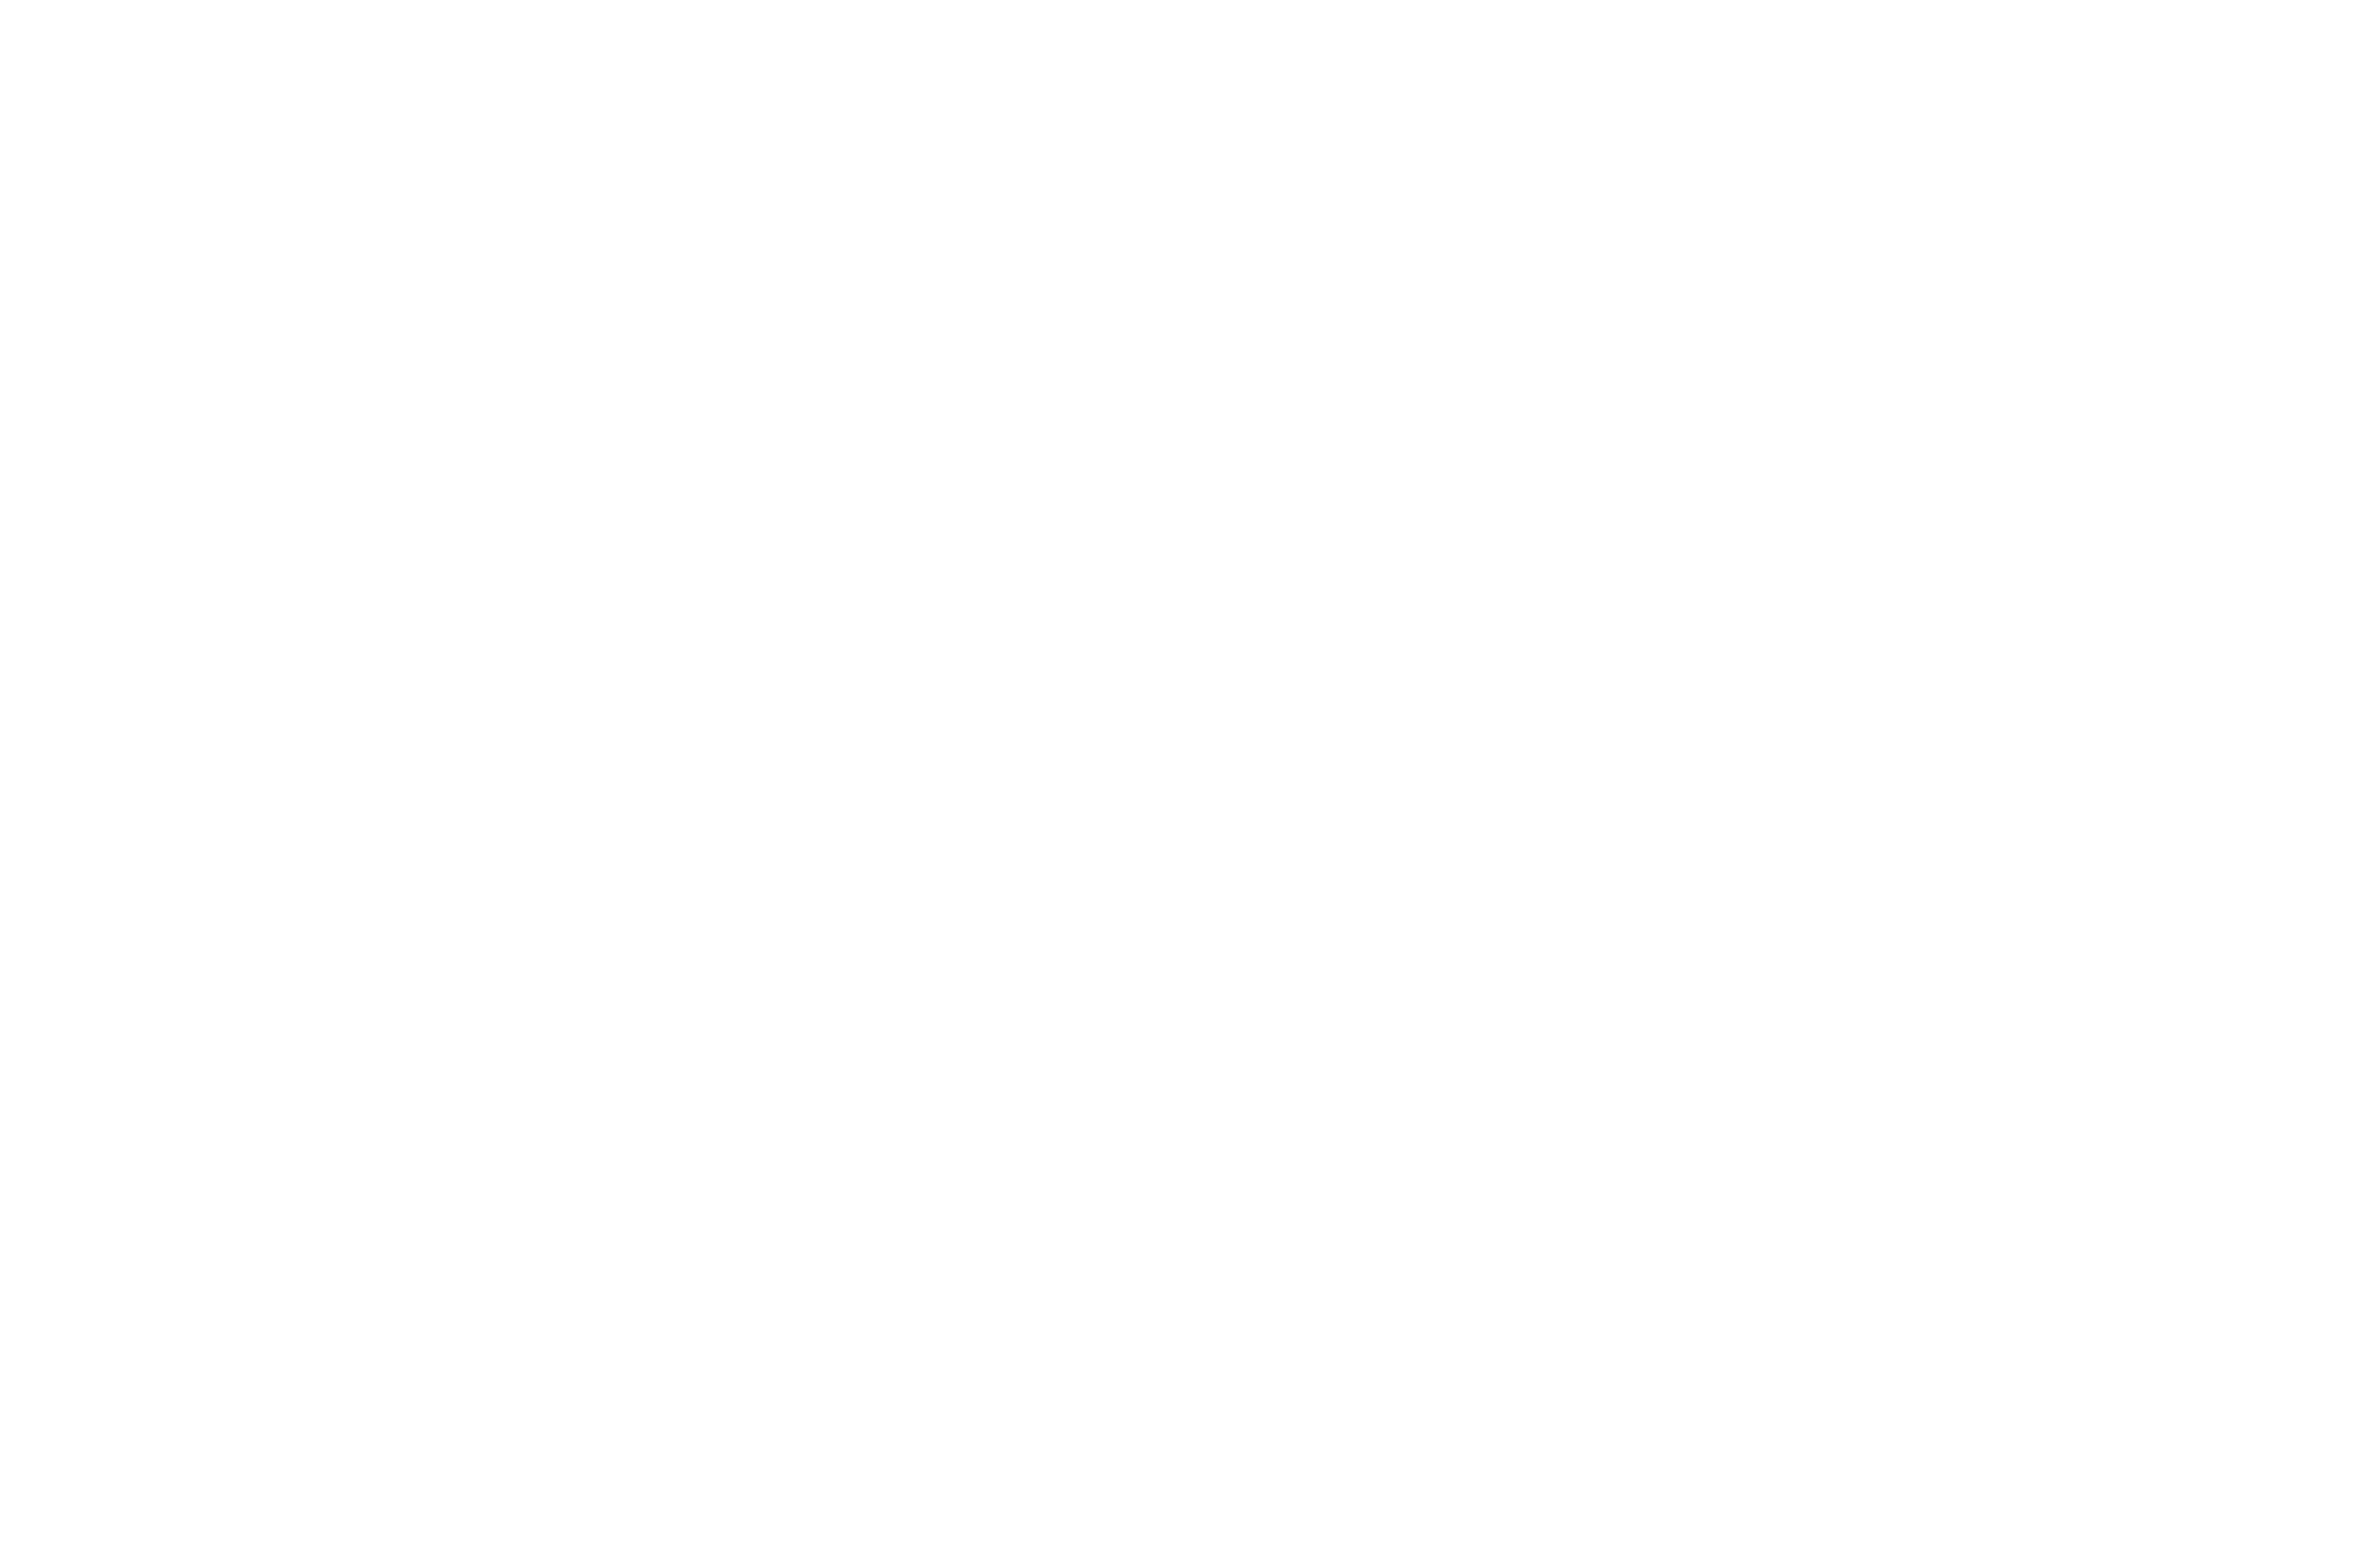 CENTRO UNIVERSITÁRIO PARAISO 